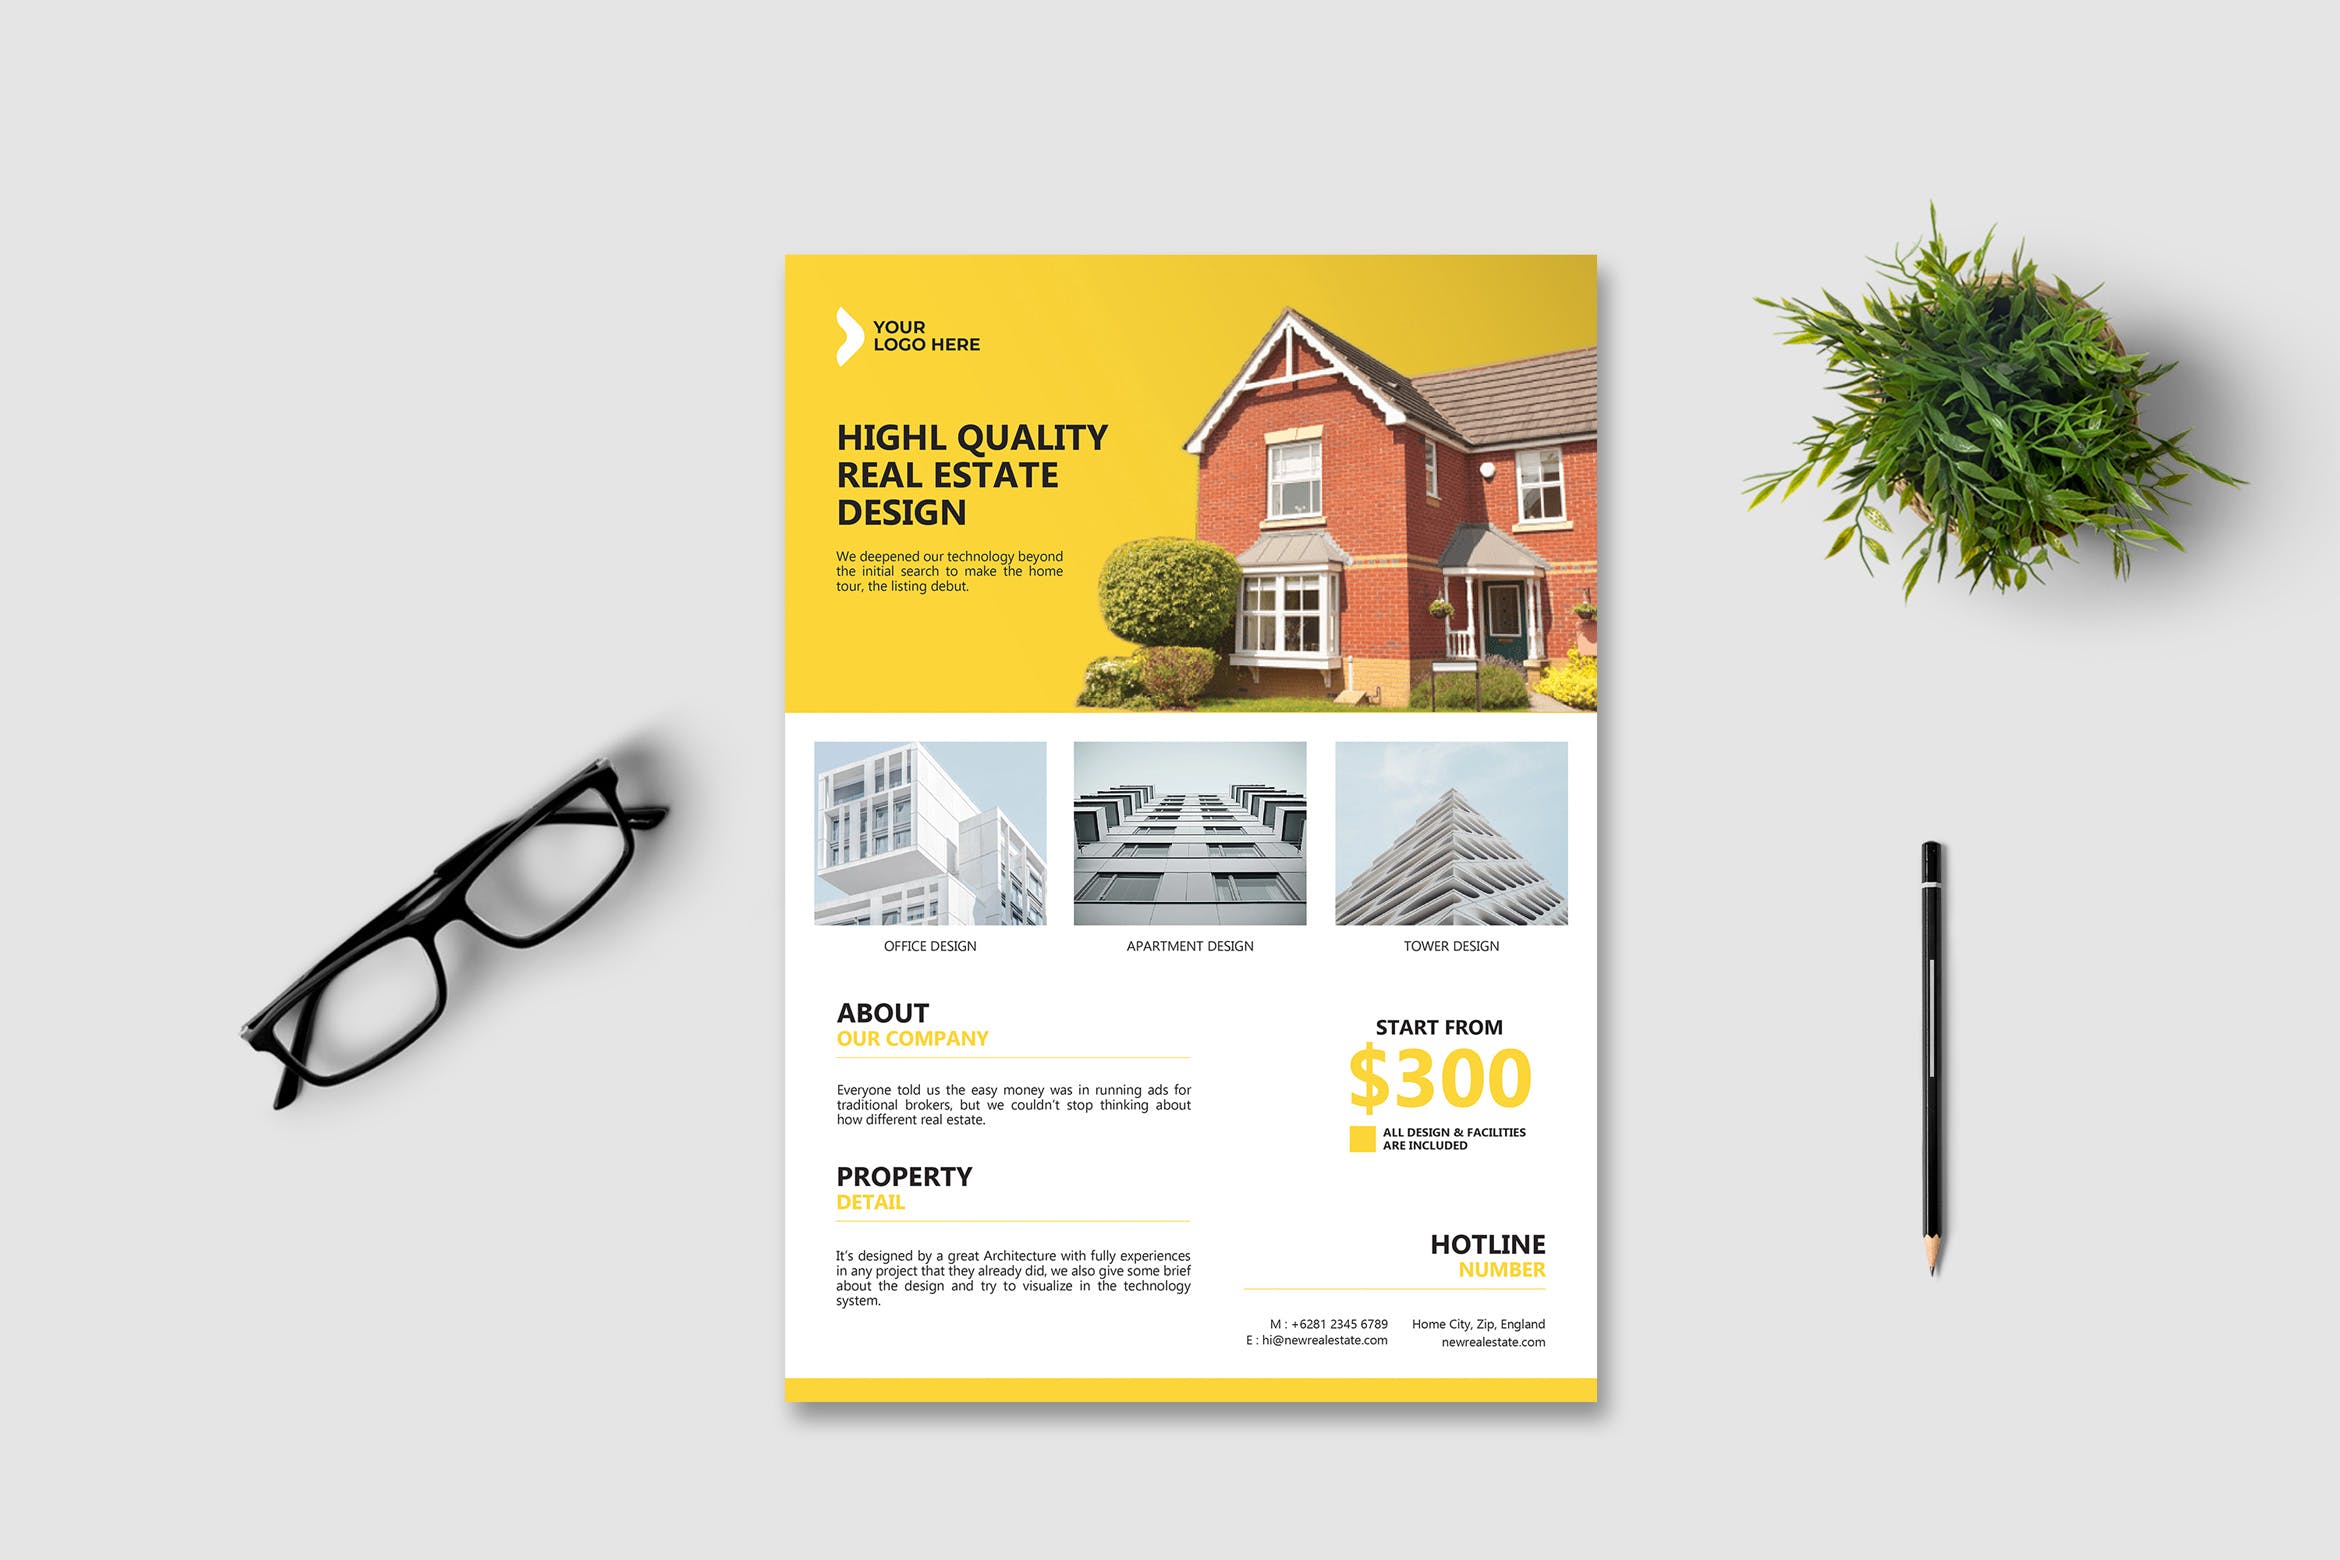 房产销售/中介主题海报传单大洋岛精选PSD模板v2 Real Estate Flyer Vol. 2插图